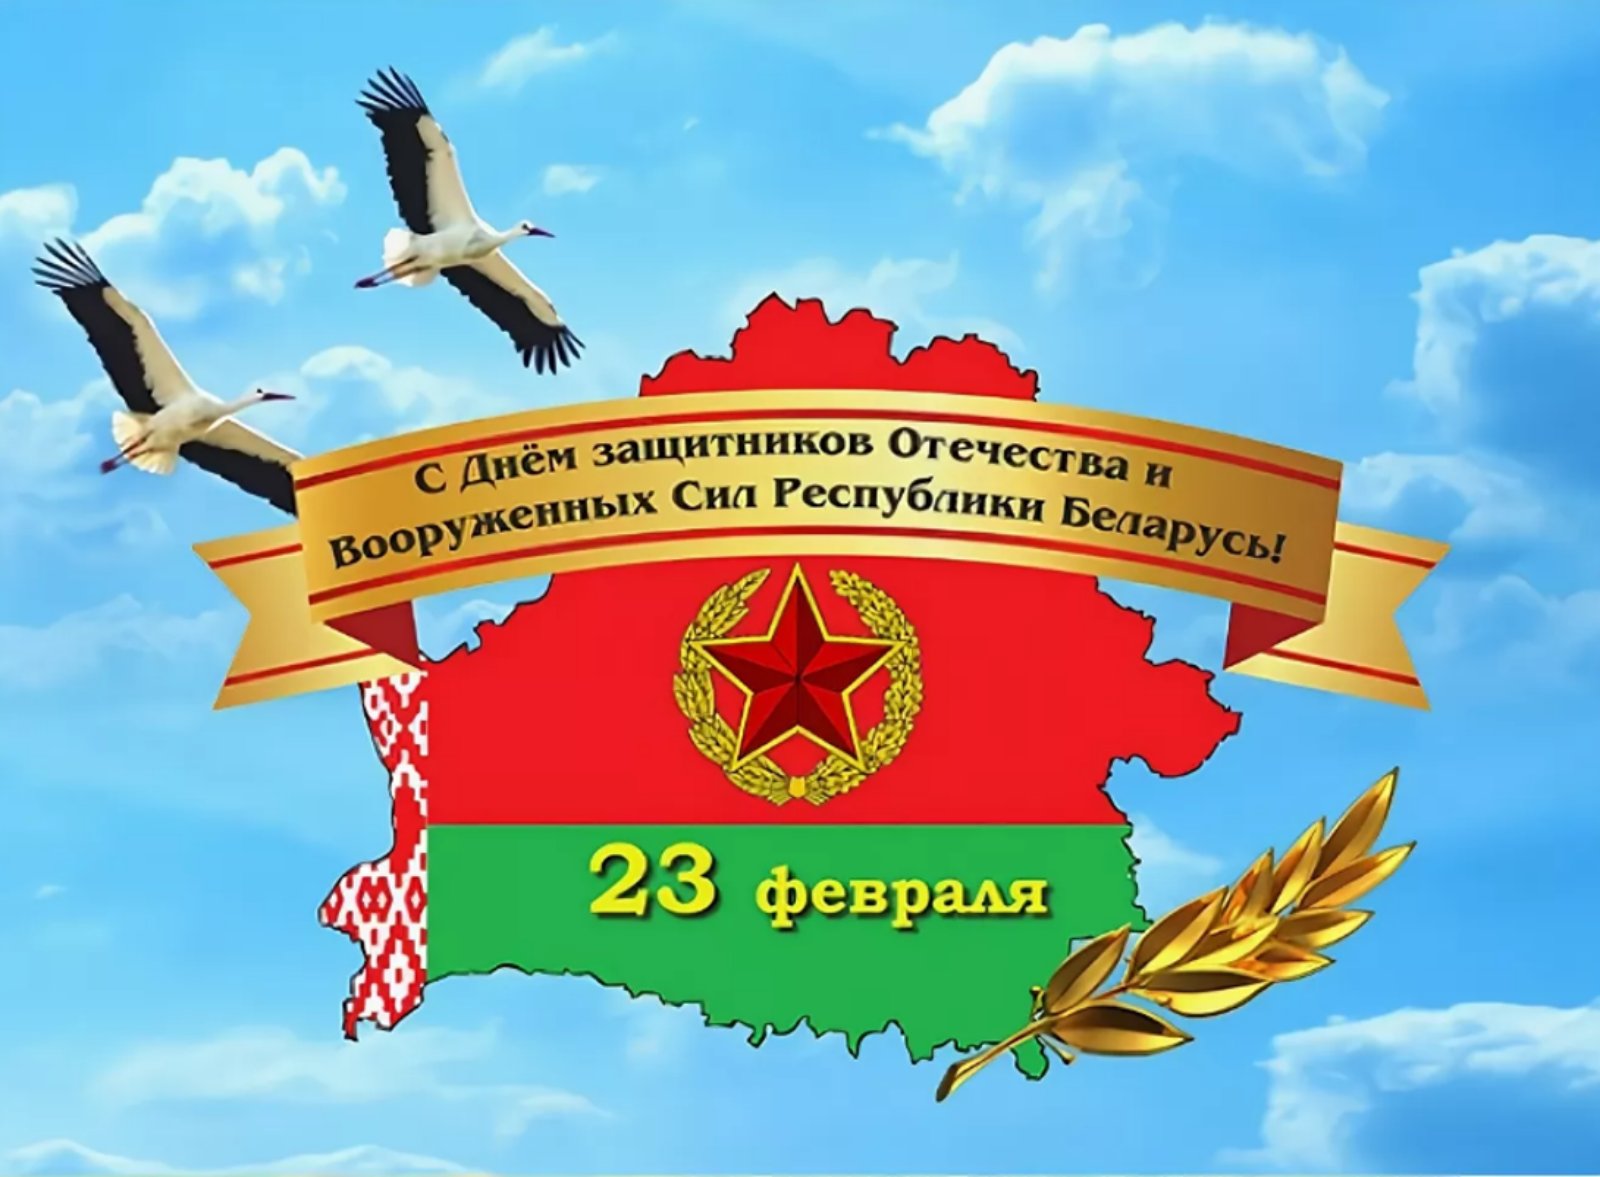 С Днем Защитников Отечества и Вооруженных Сил Республики Беларусь!